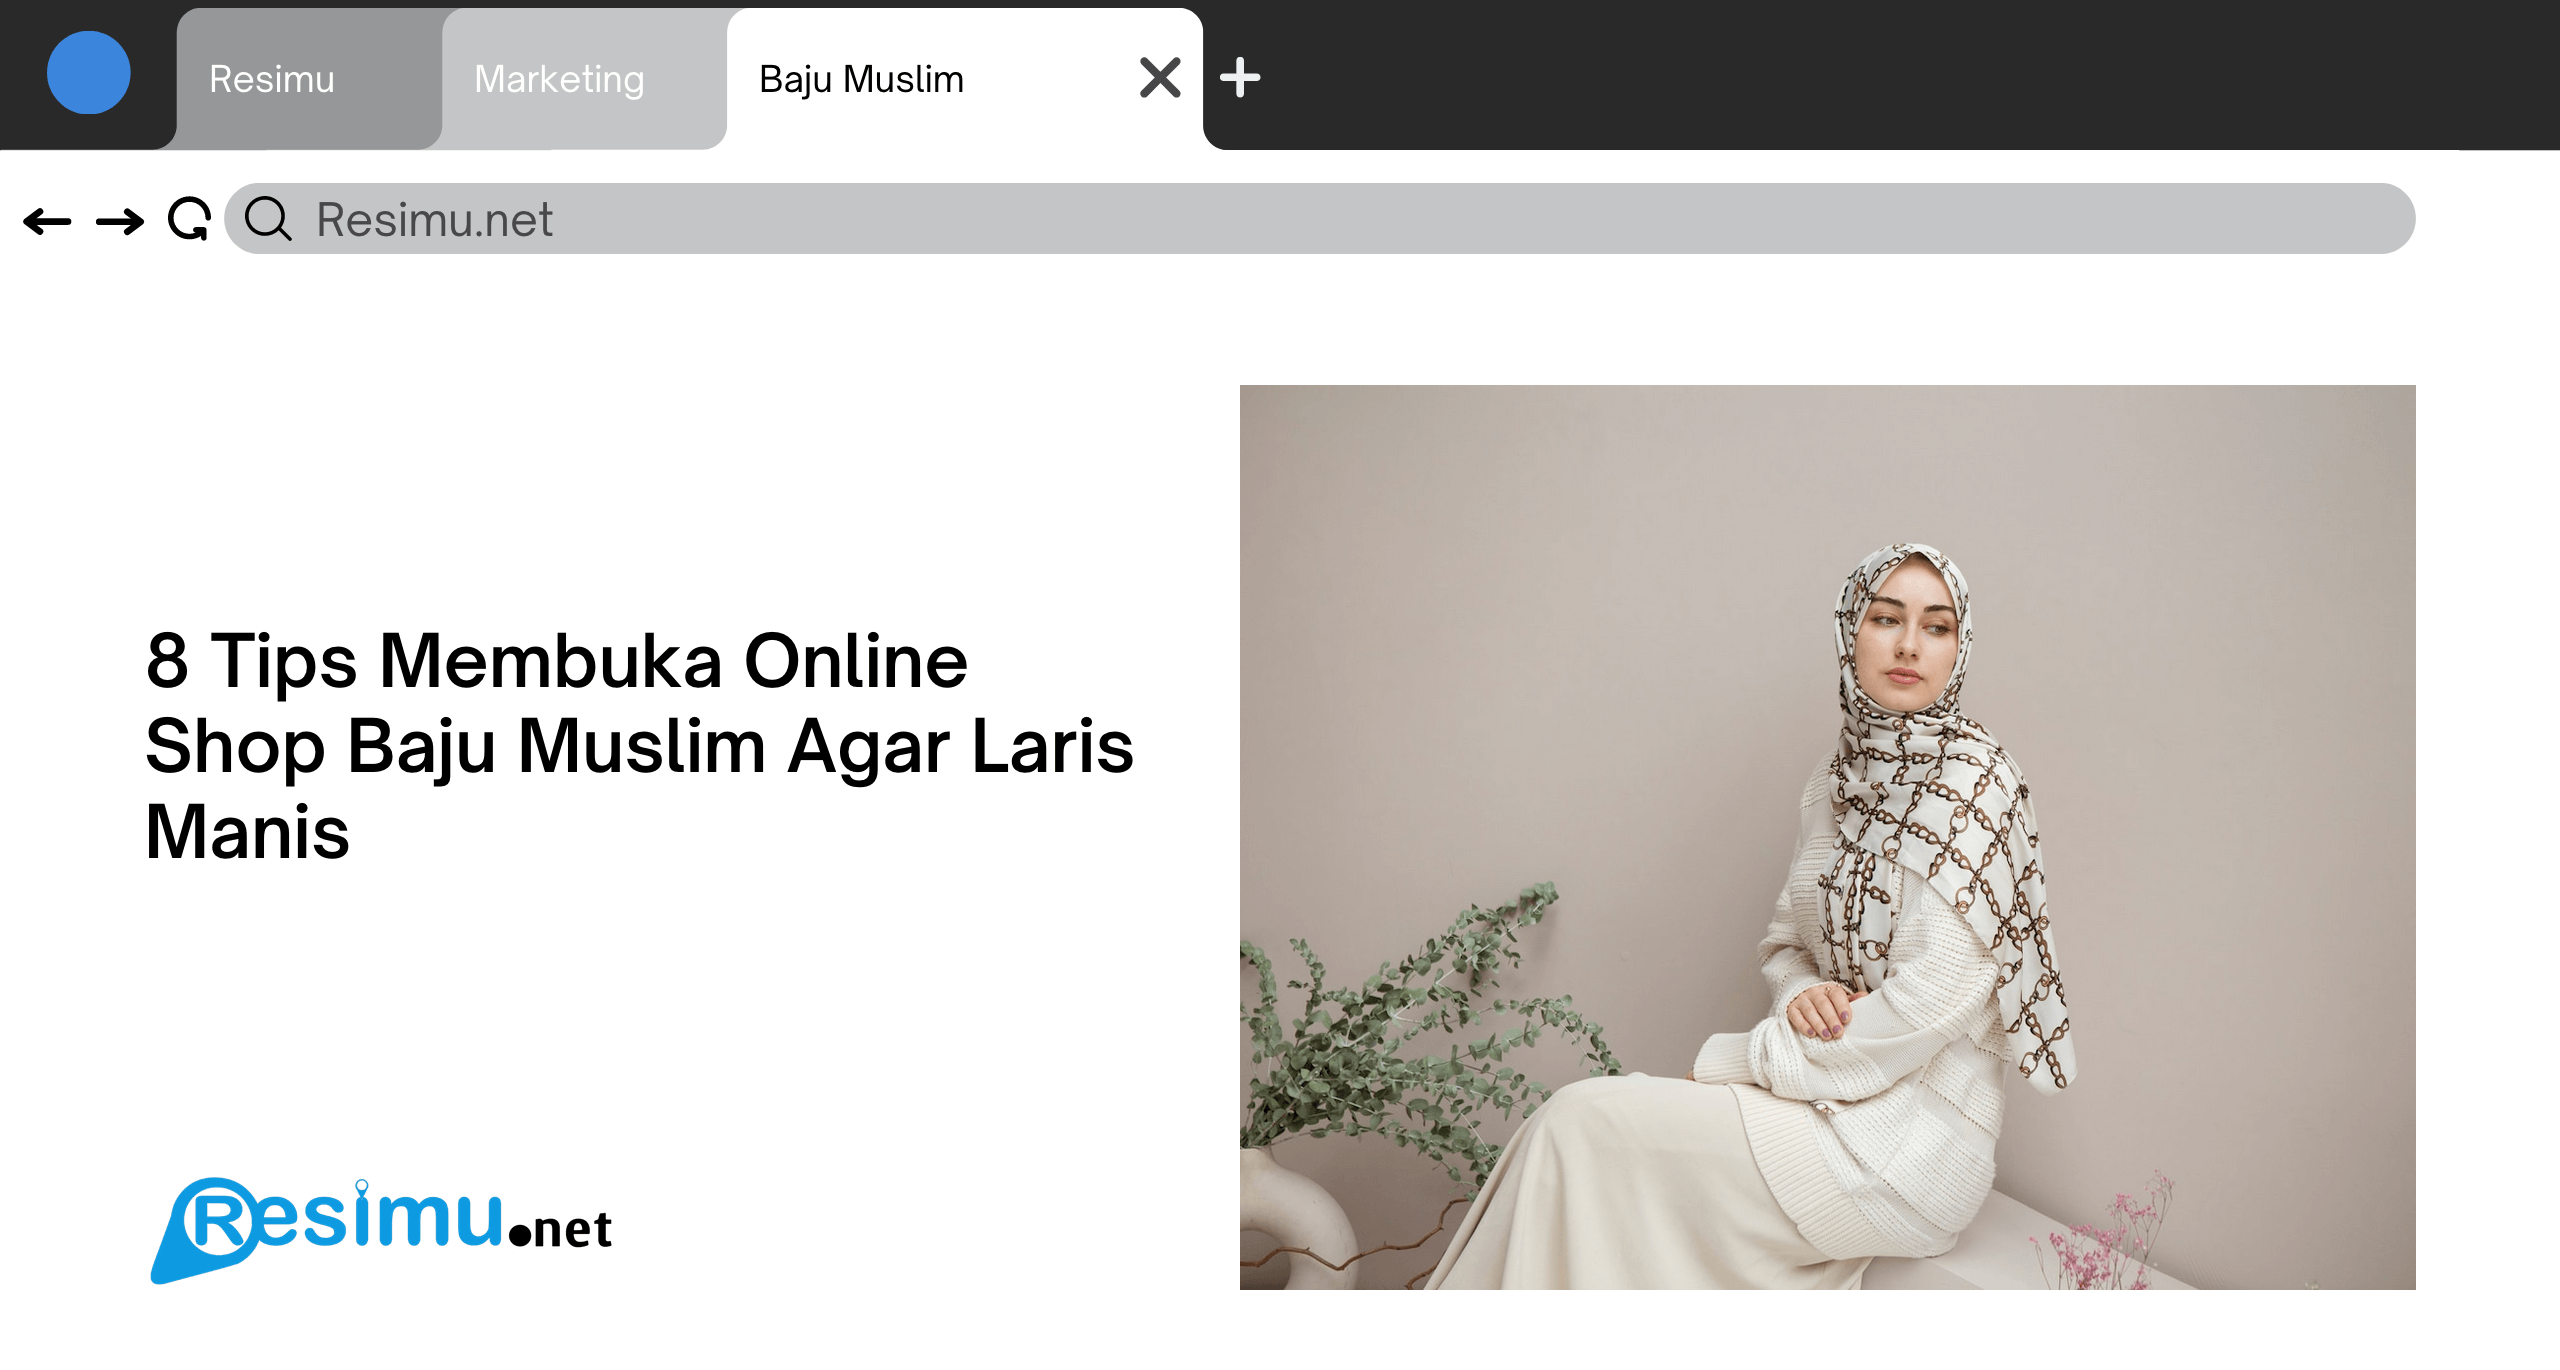 8 Tips Membuka Online Shop Baju Muslim Agar Laris Manis